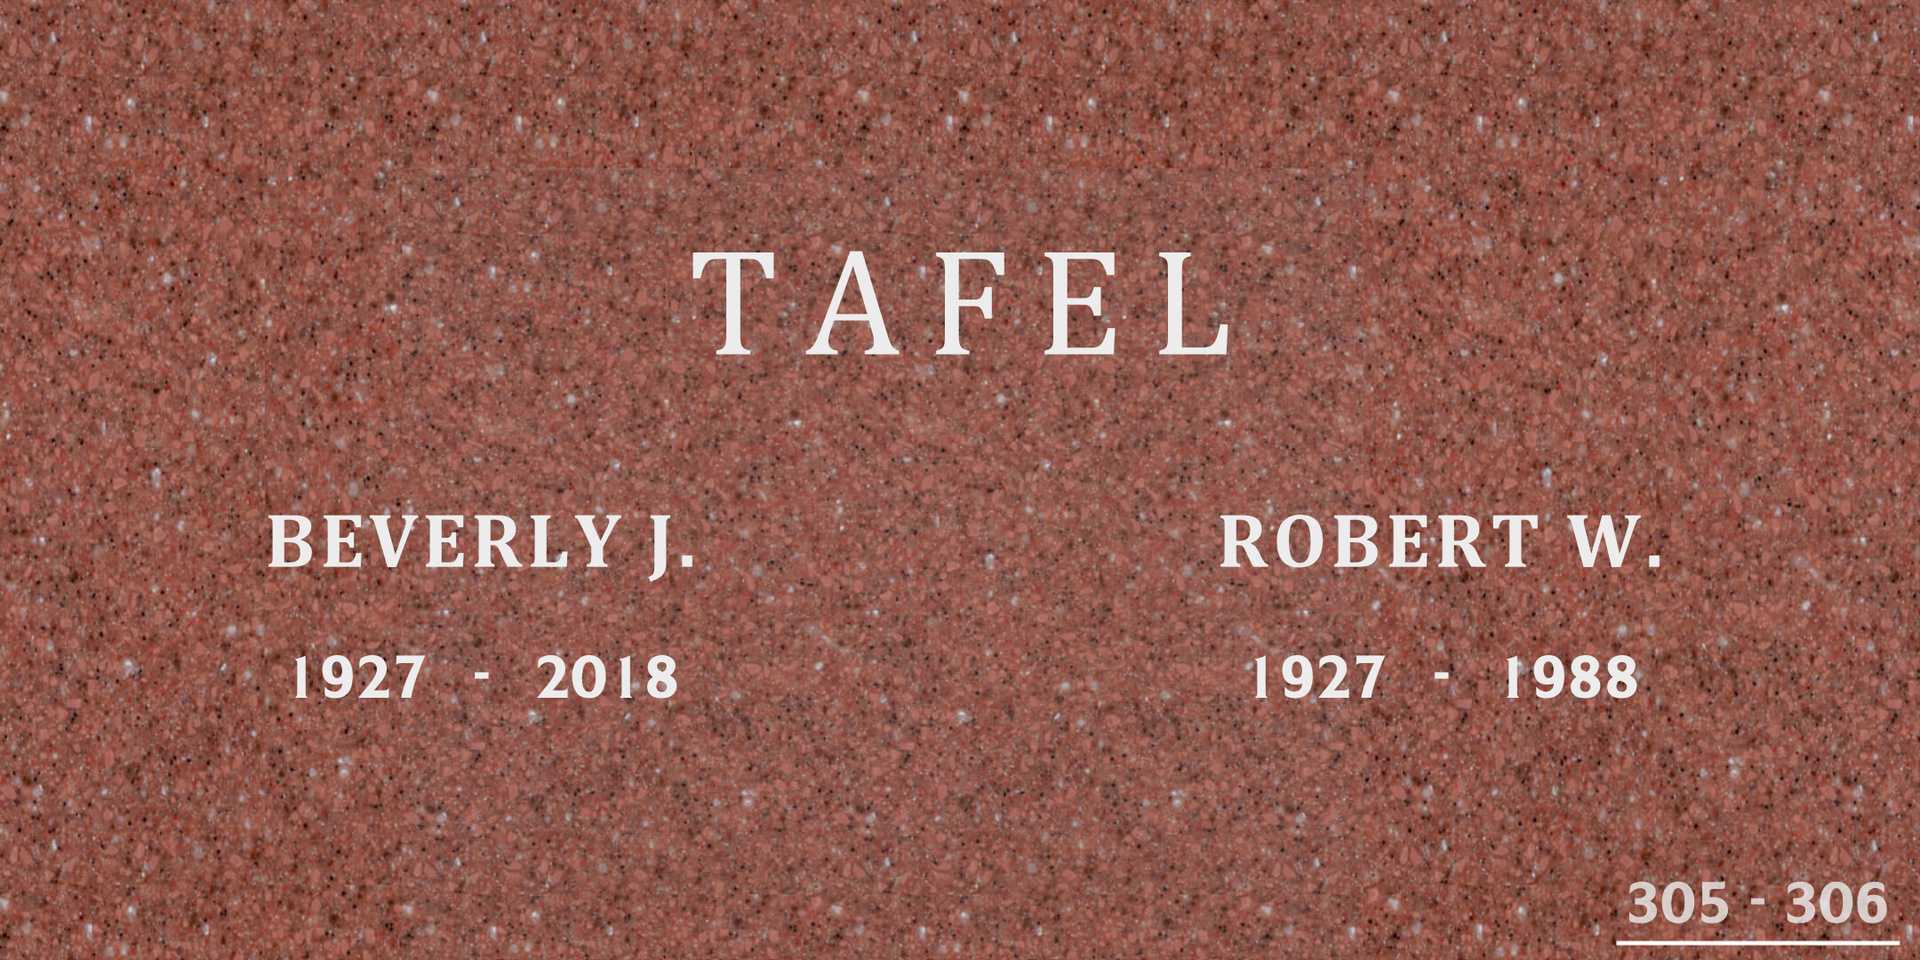 Robert W. Tafel's grave